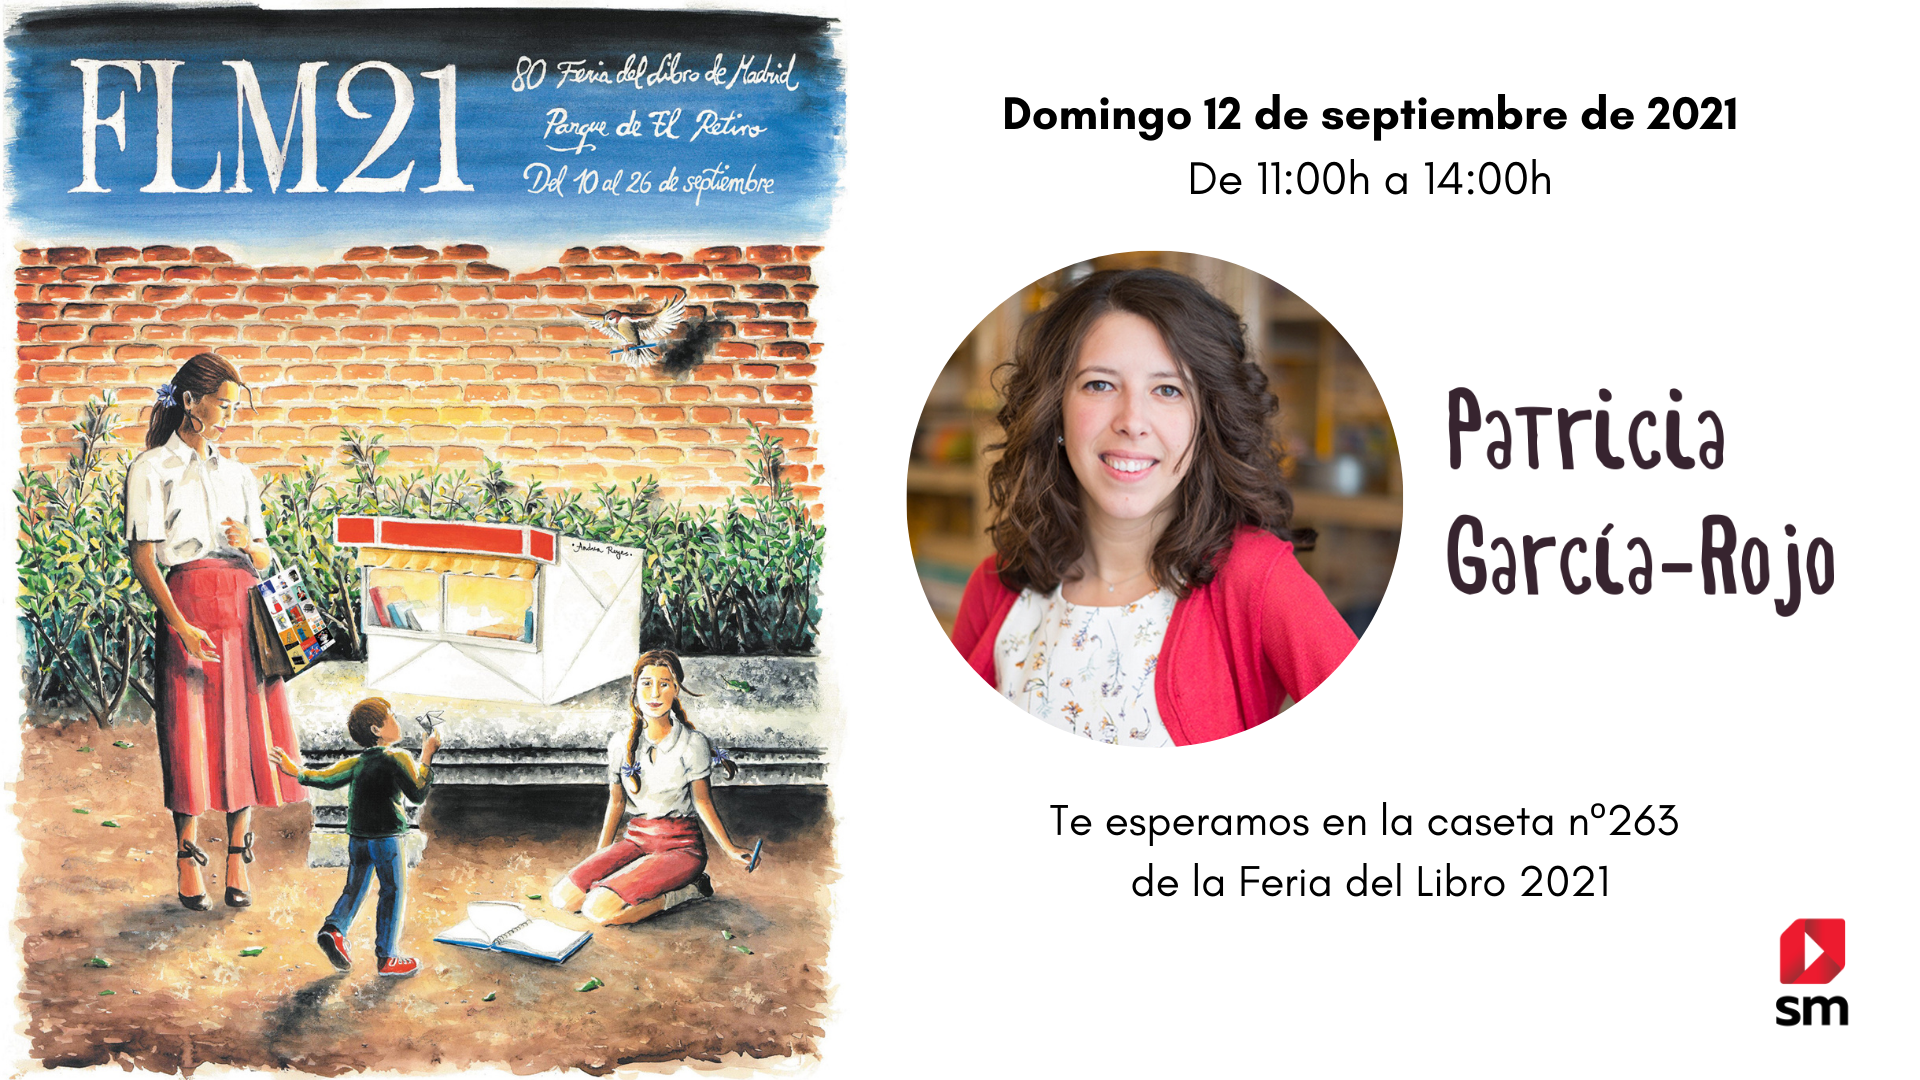 Patricia García-Rojo en la Feria del Libro de Madrid 2021